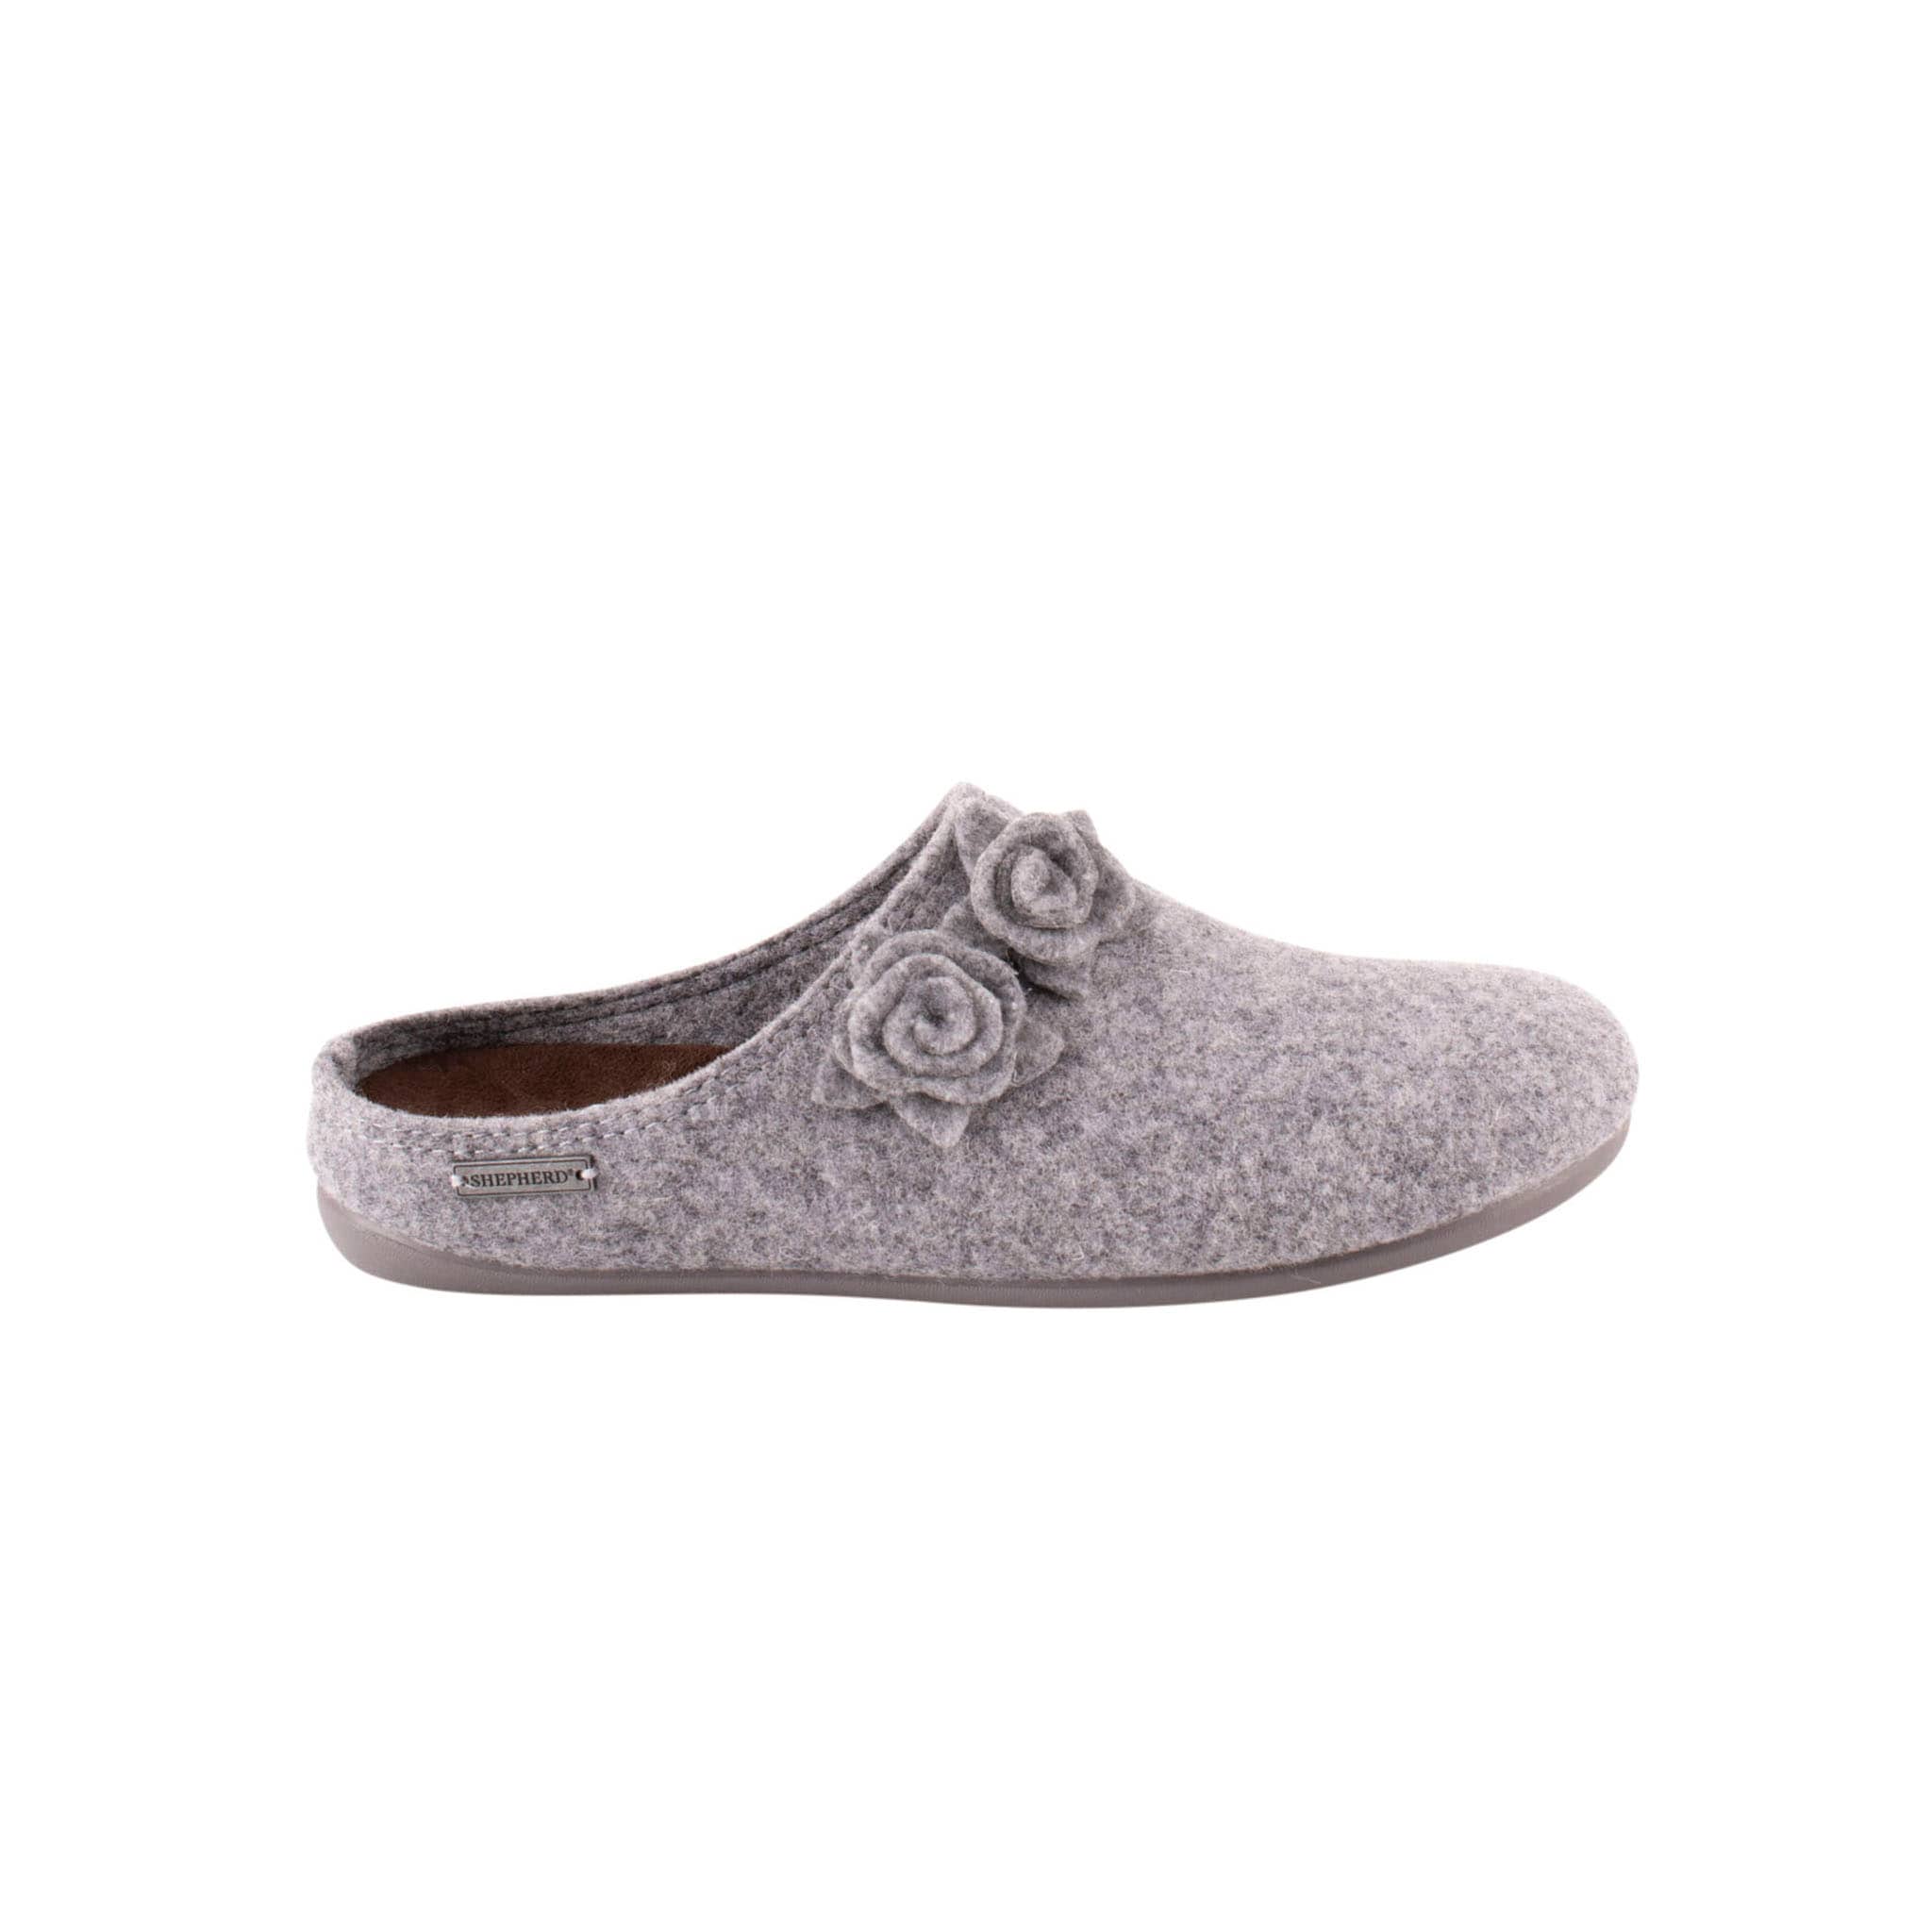 Liselott wool slippers